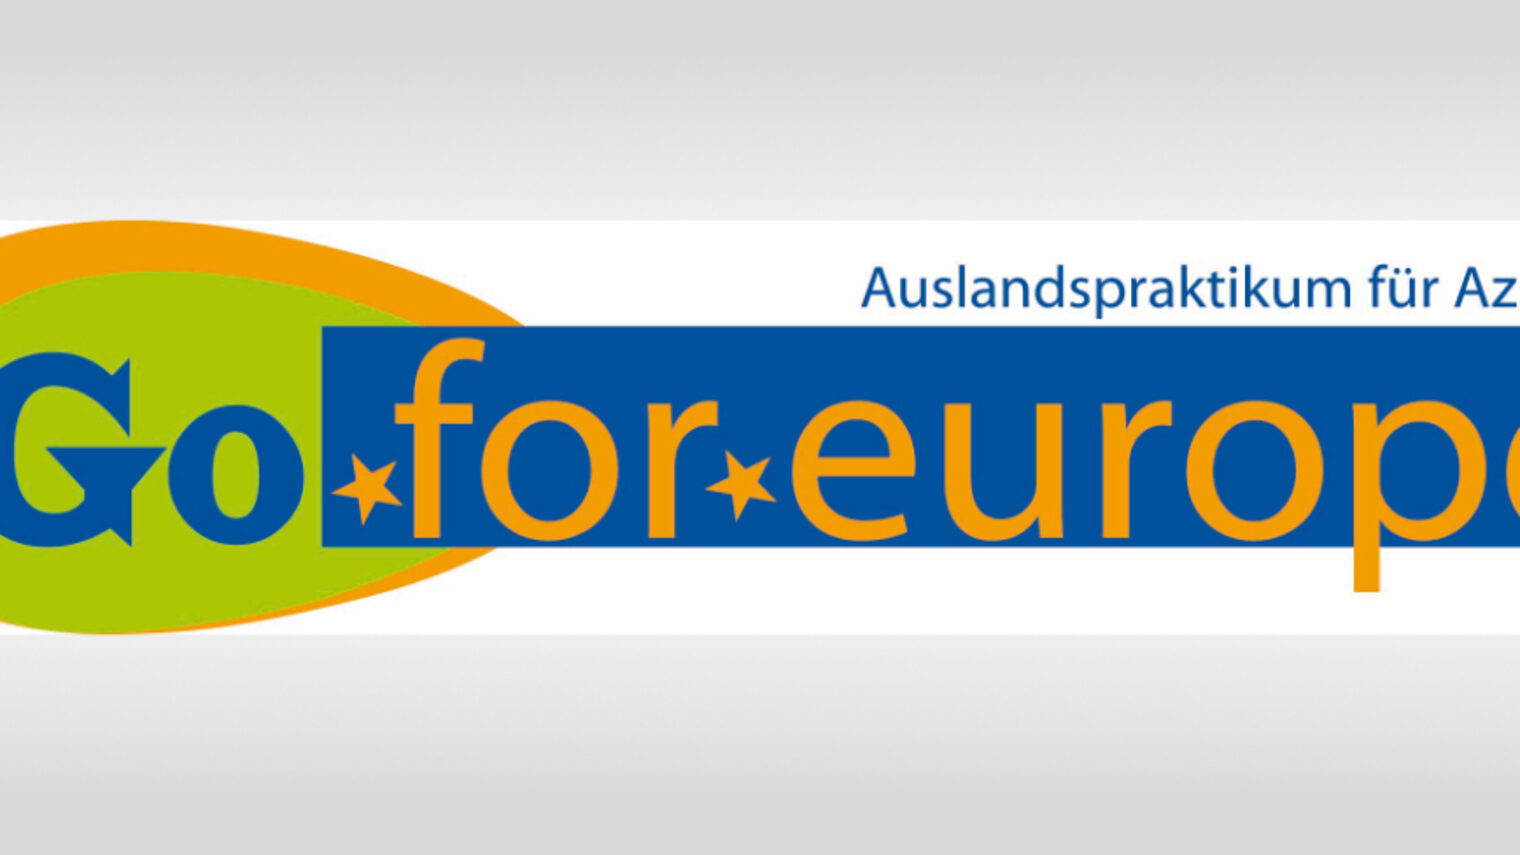 Text: Go for Europe, Auslandspraktikum für Azubis